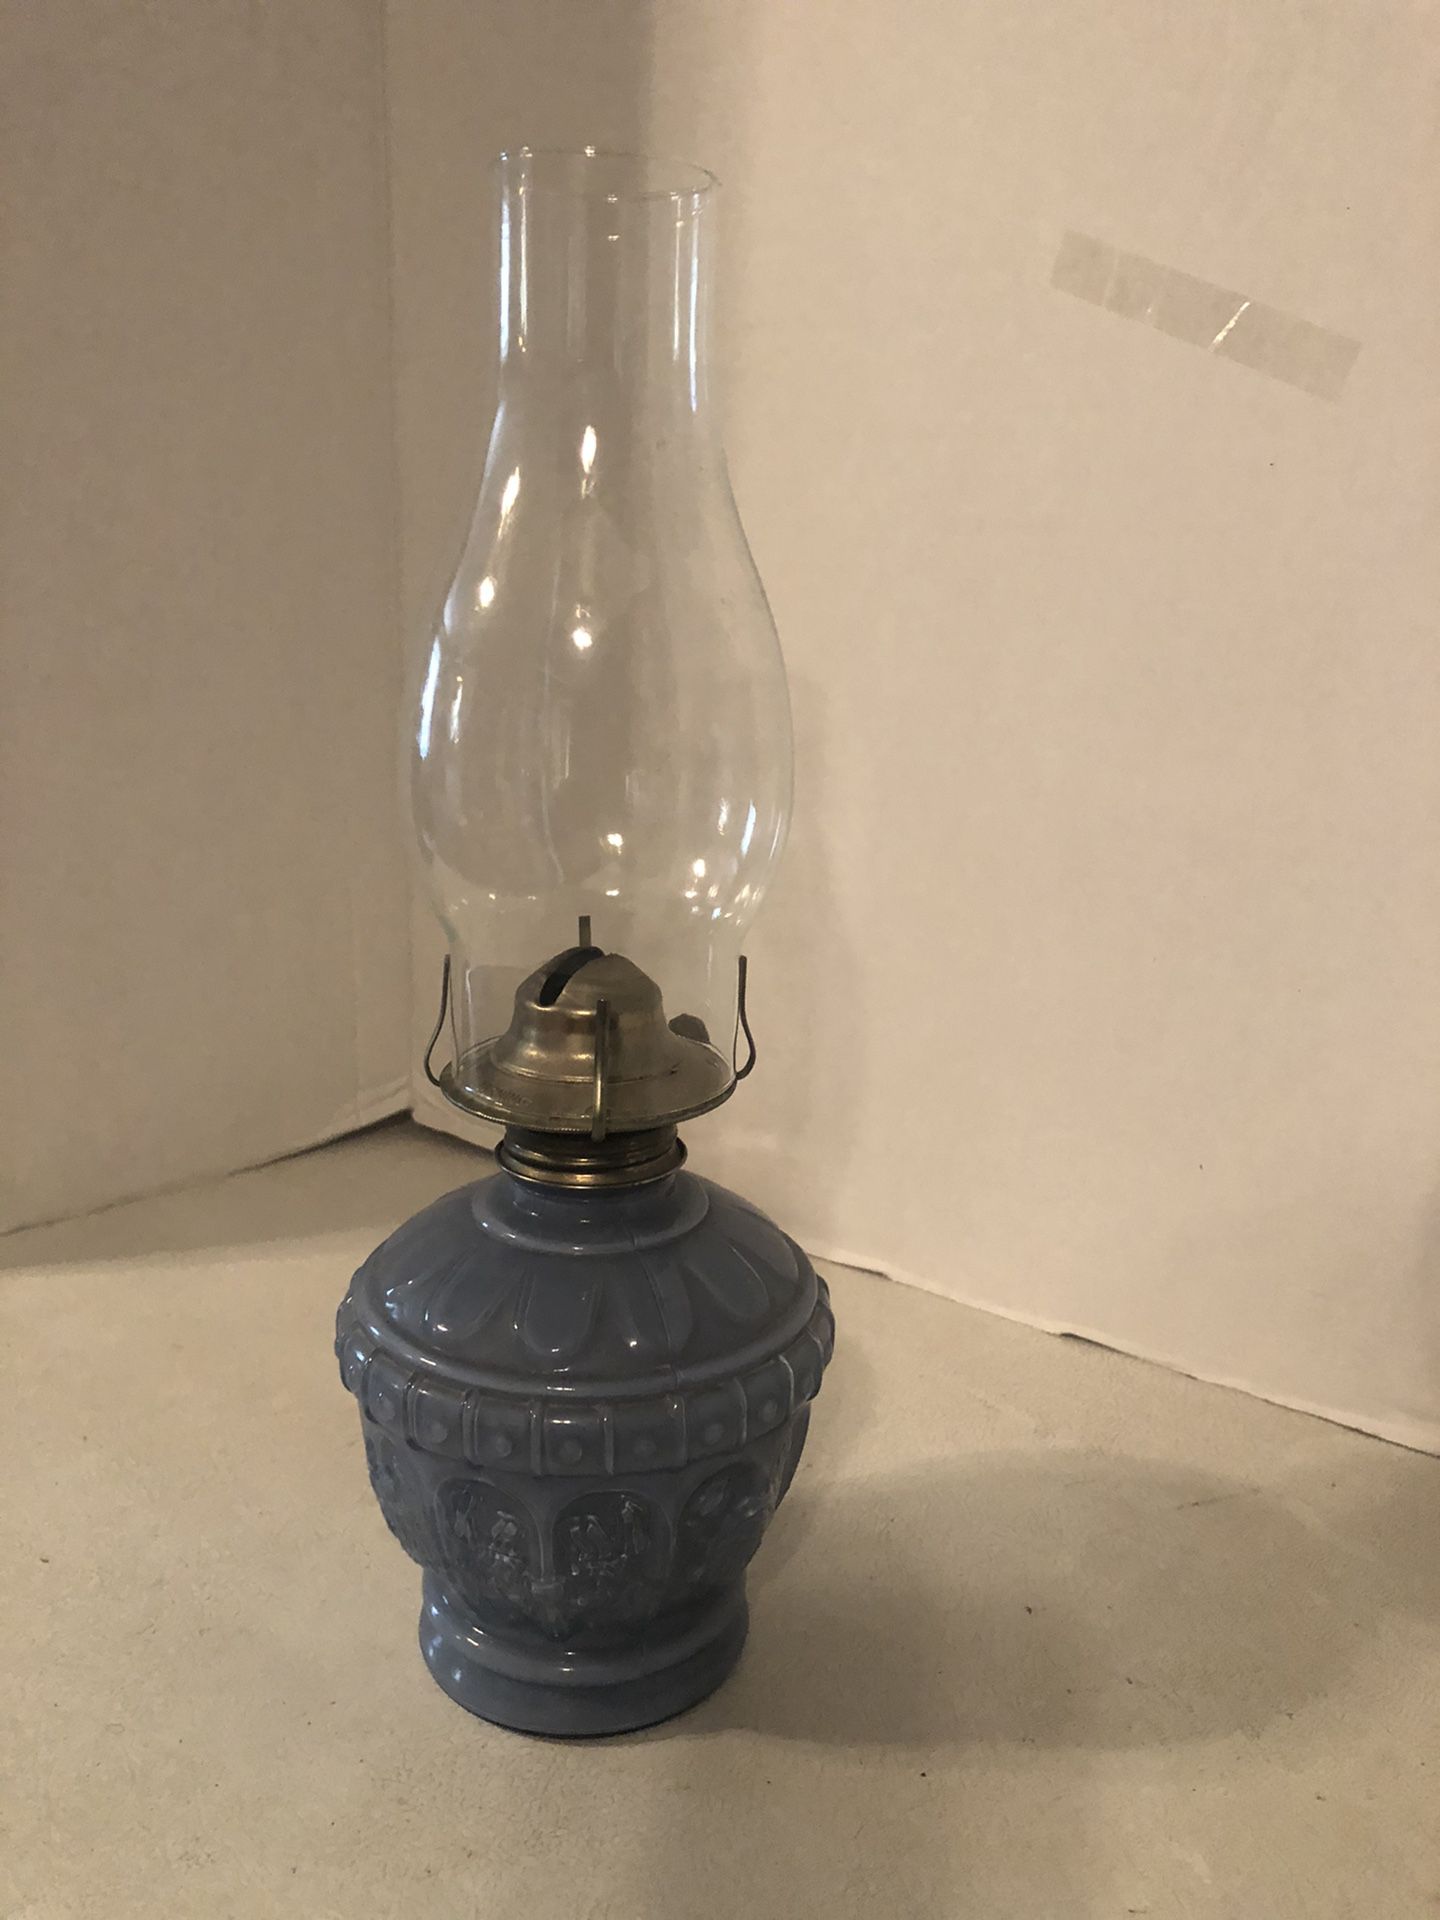 VINTAGE KAADAN PRESSED GLASS OIL OR PARAFFIN LAMP